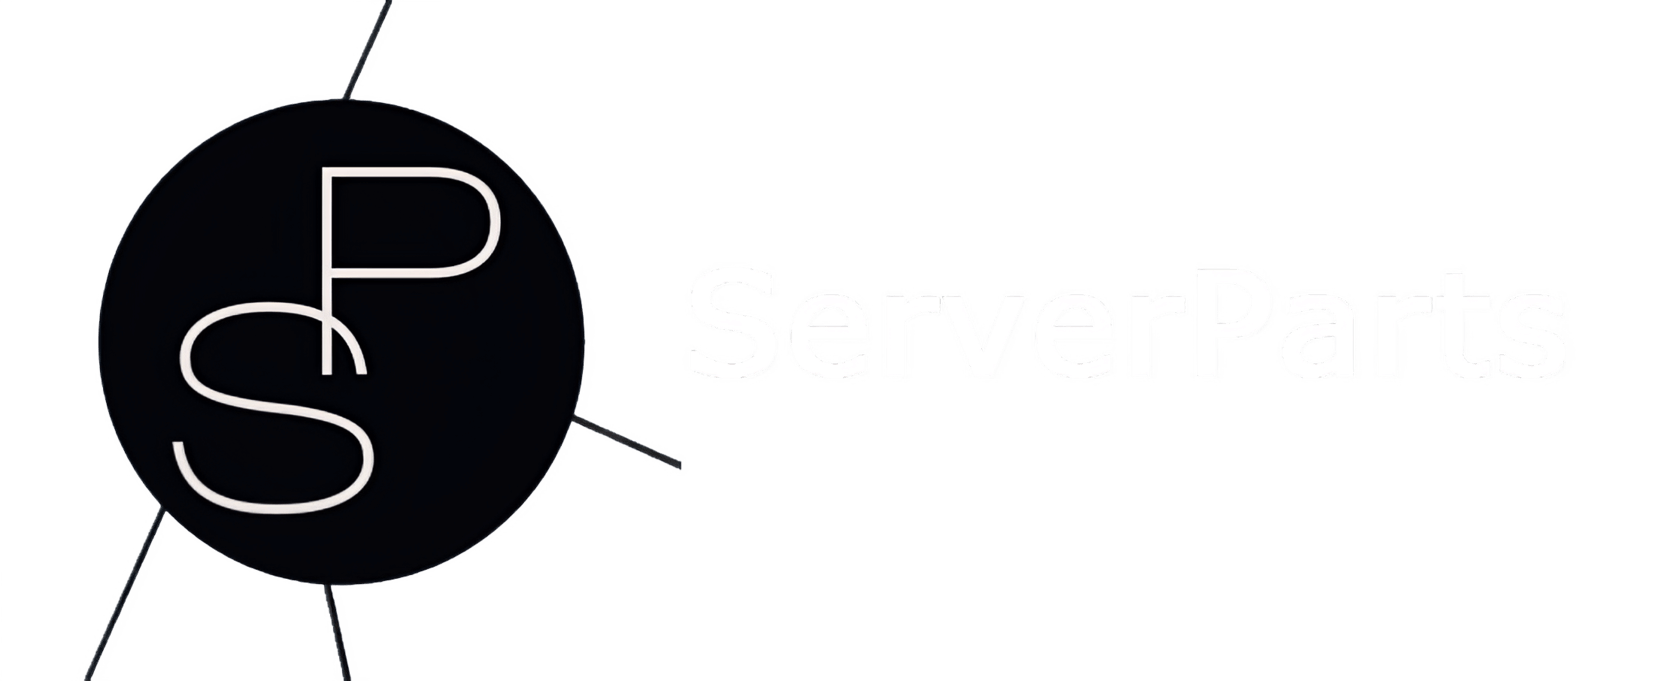  Serverparts 